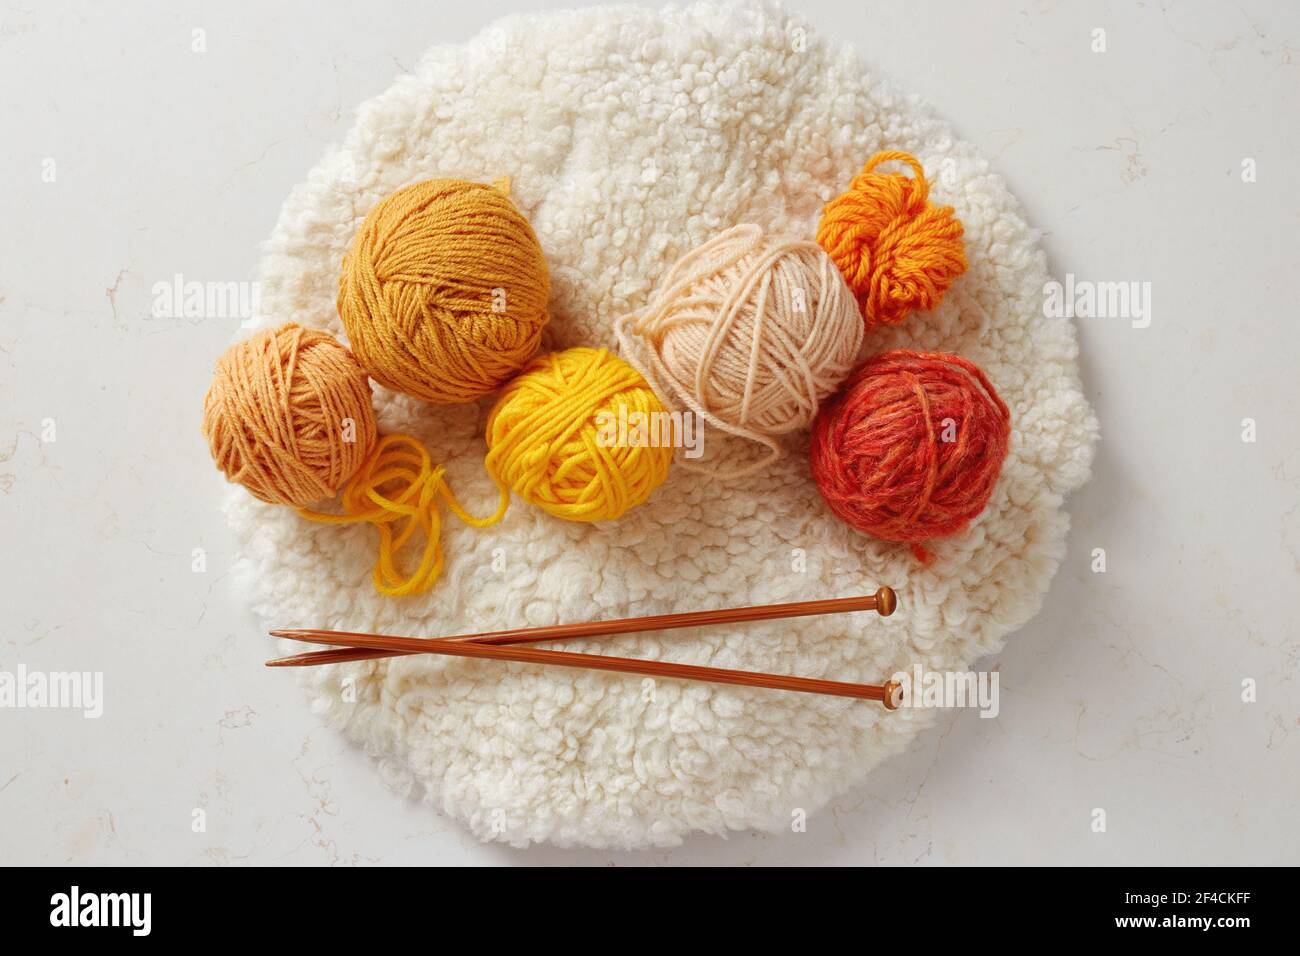 Agujas de punto y bolas de lana de colores. Bolas de lana parcialmente desenrollado. Foto de stock